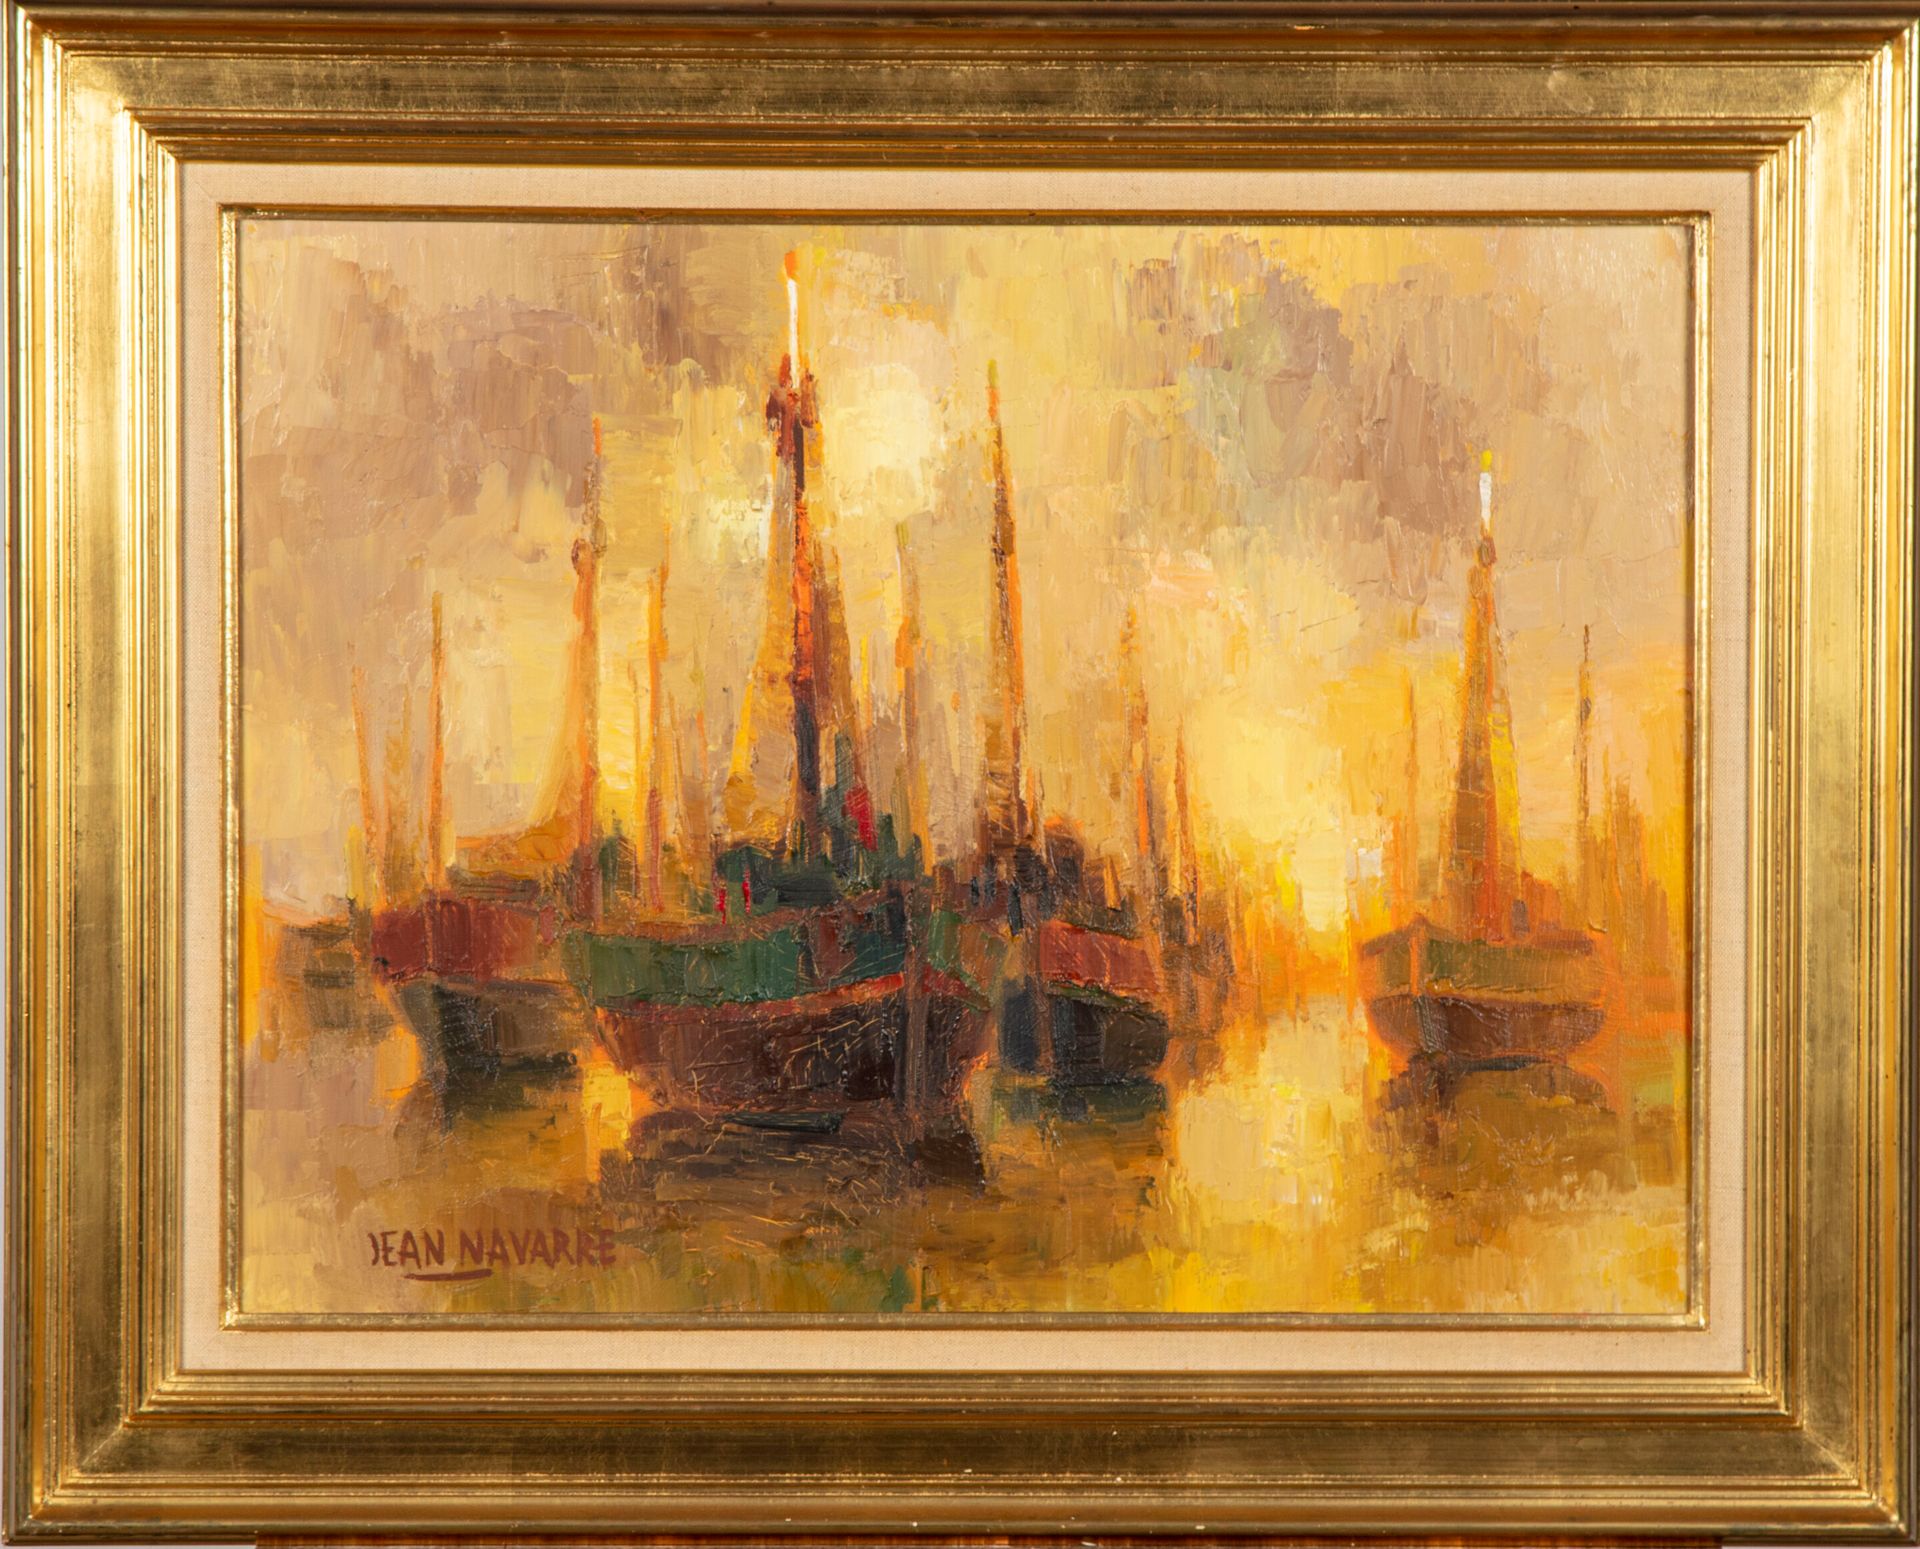 Null 让-纳瓦雷 (1914-2000)

雾中的船只

布面油画，左下方有签名，背面有标题和会签

47 x 61厘米

有框

油漆中的裂缝